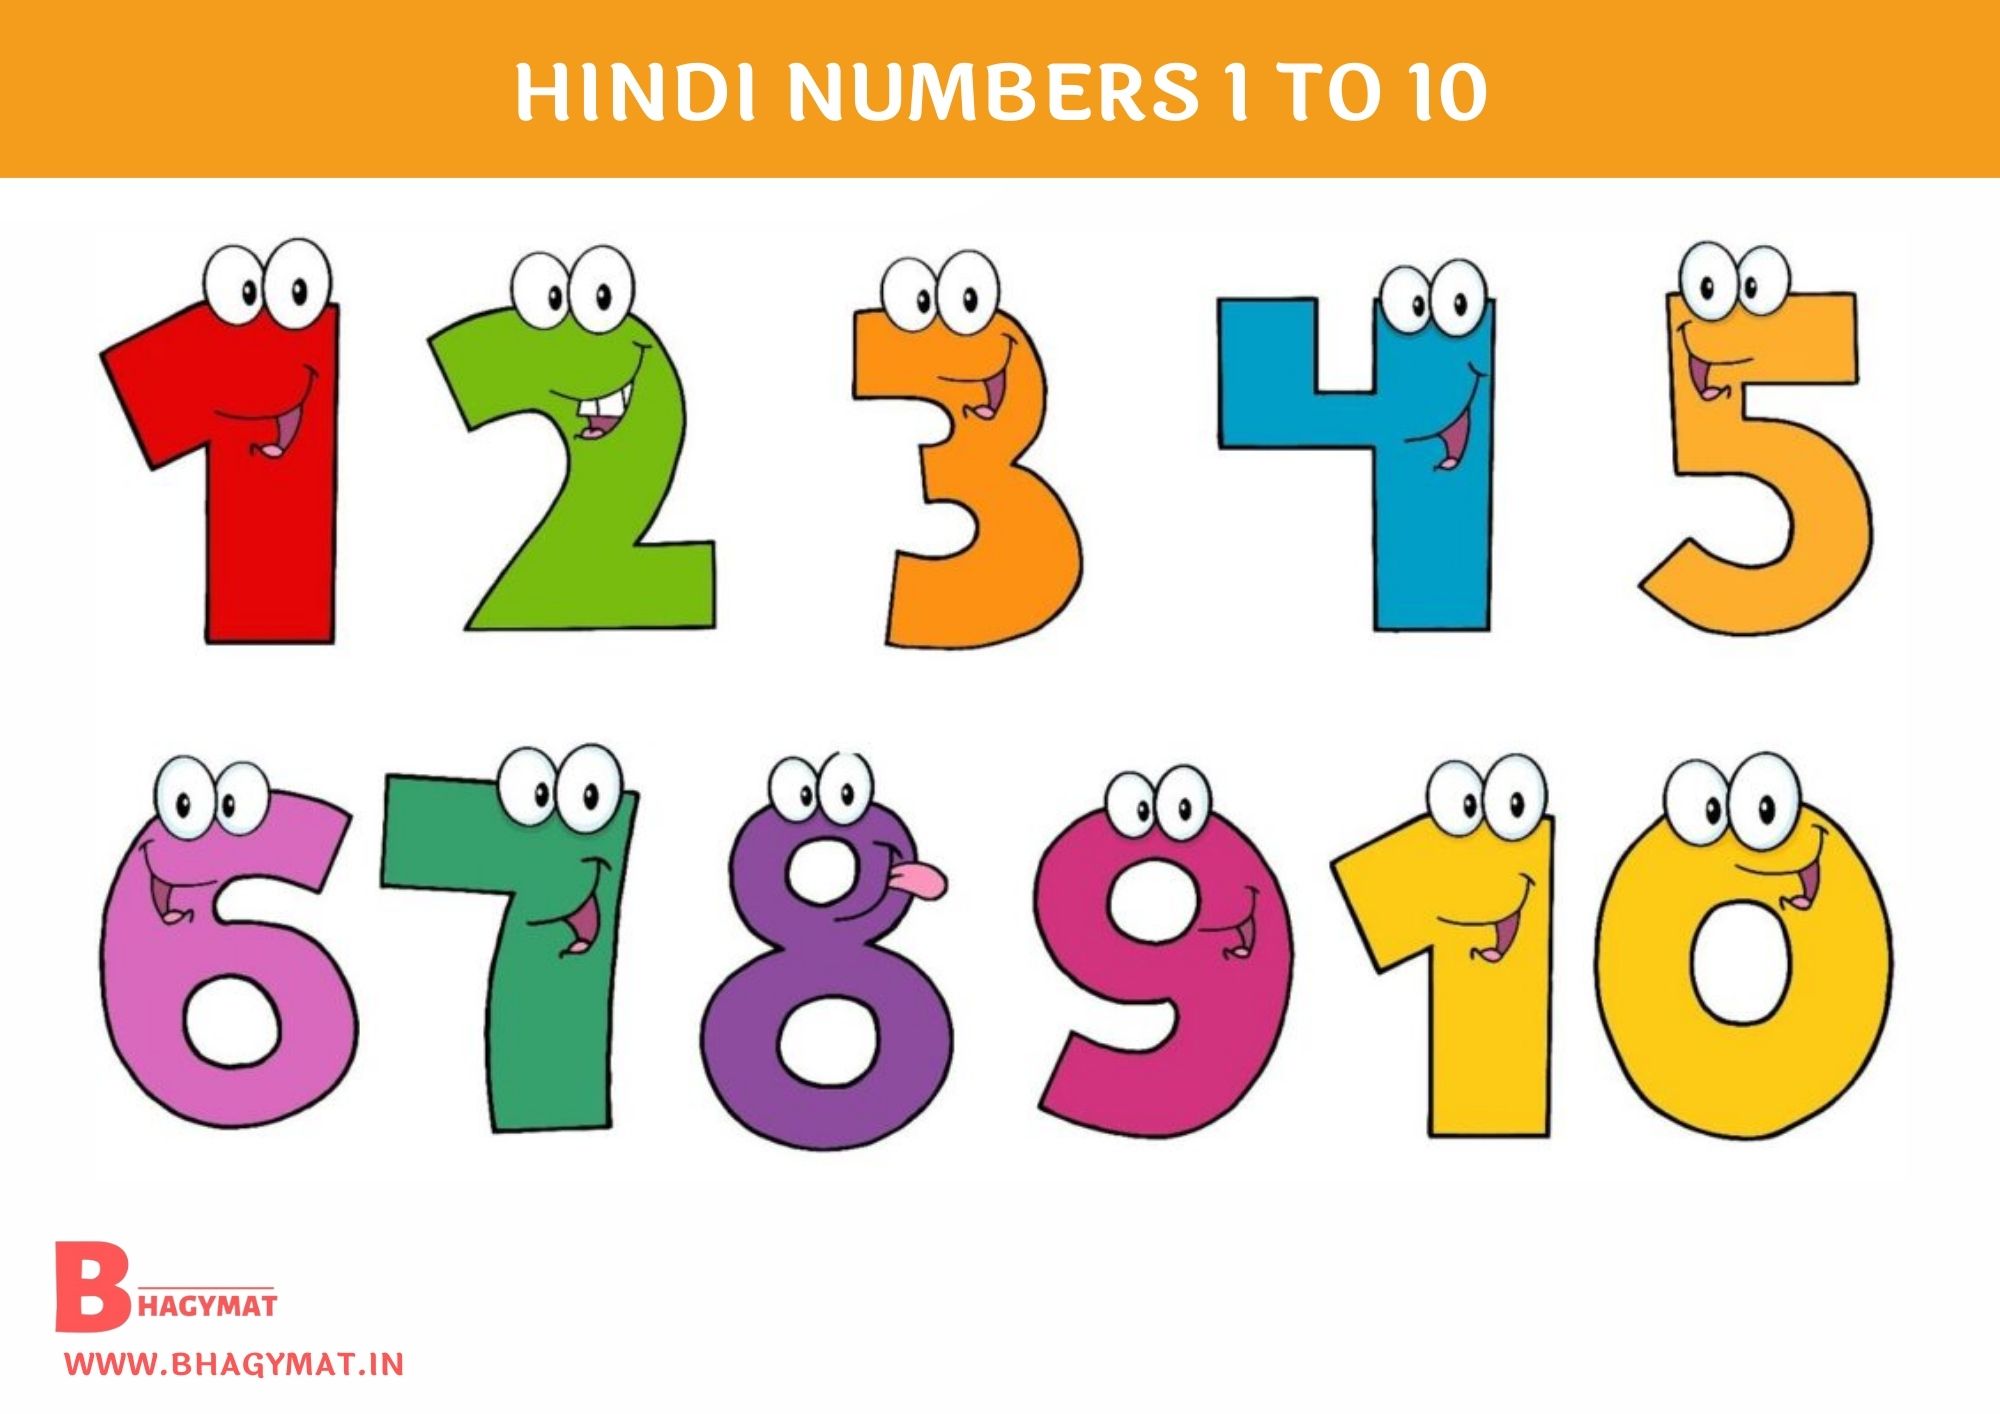 हिंदी नंबर्स 1 से 10 तक (Hindi Numbers 1-10) - Numbers Hindi 1 To 10 - 1 To 10 Hindi Numbers - Hindi Numbers 1 To 10